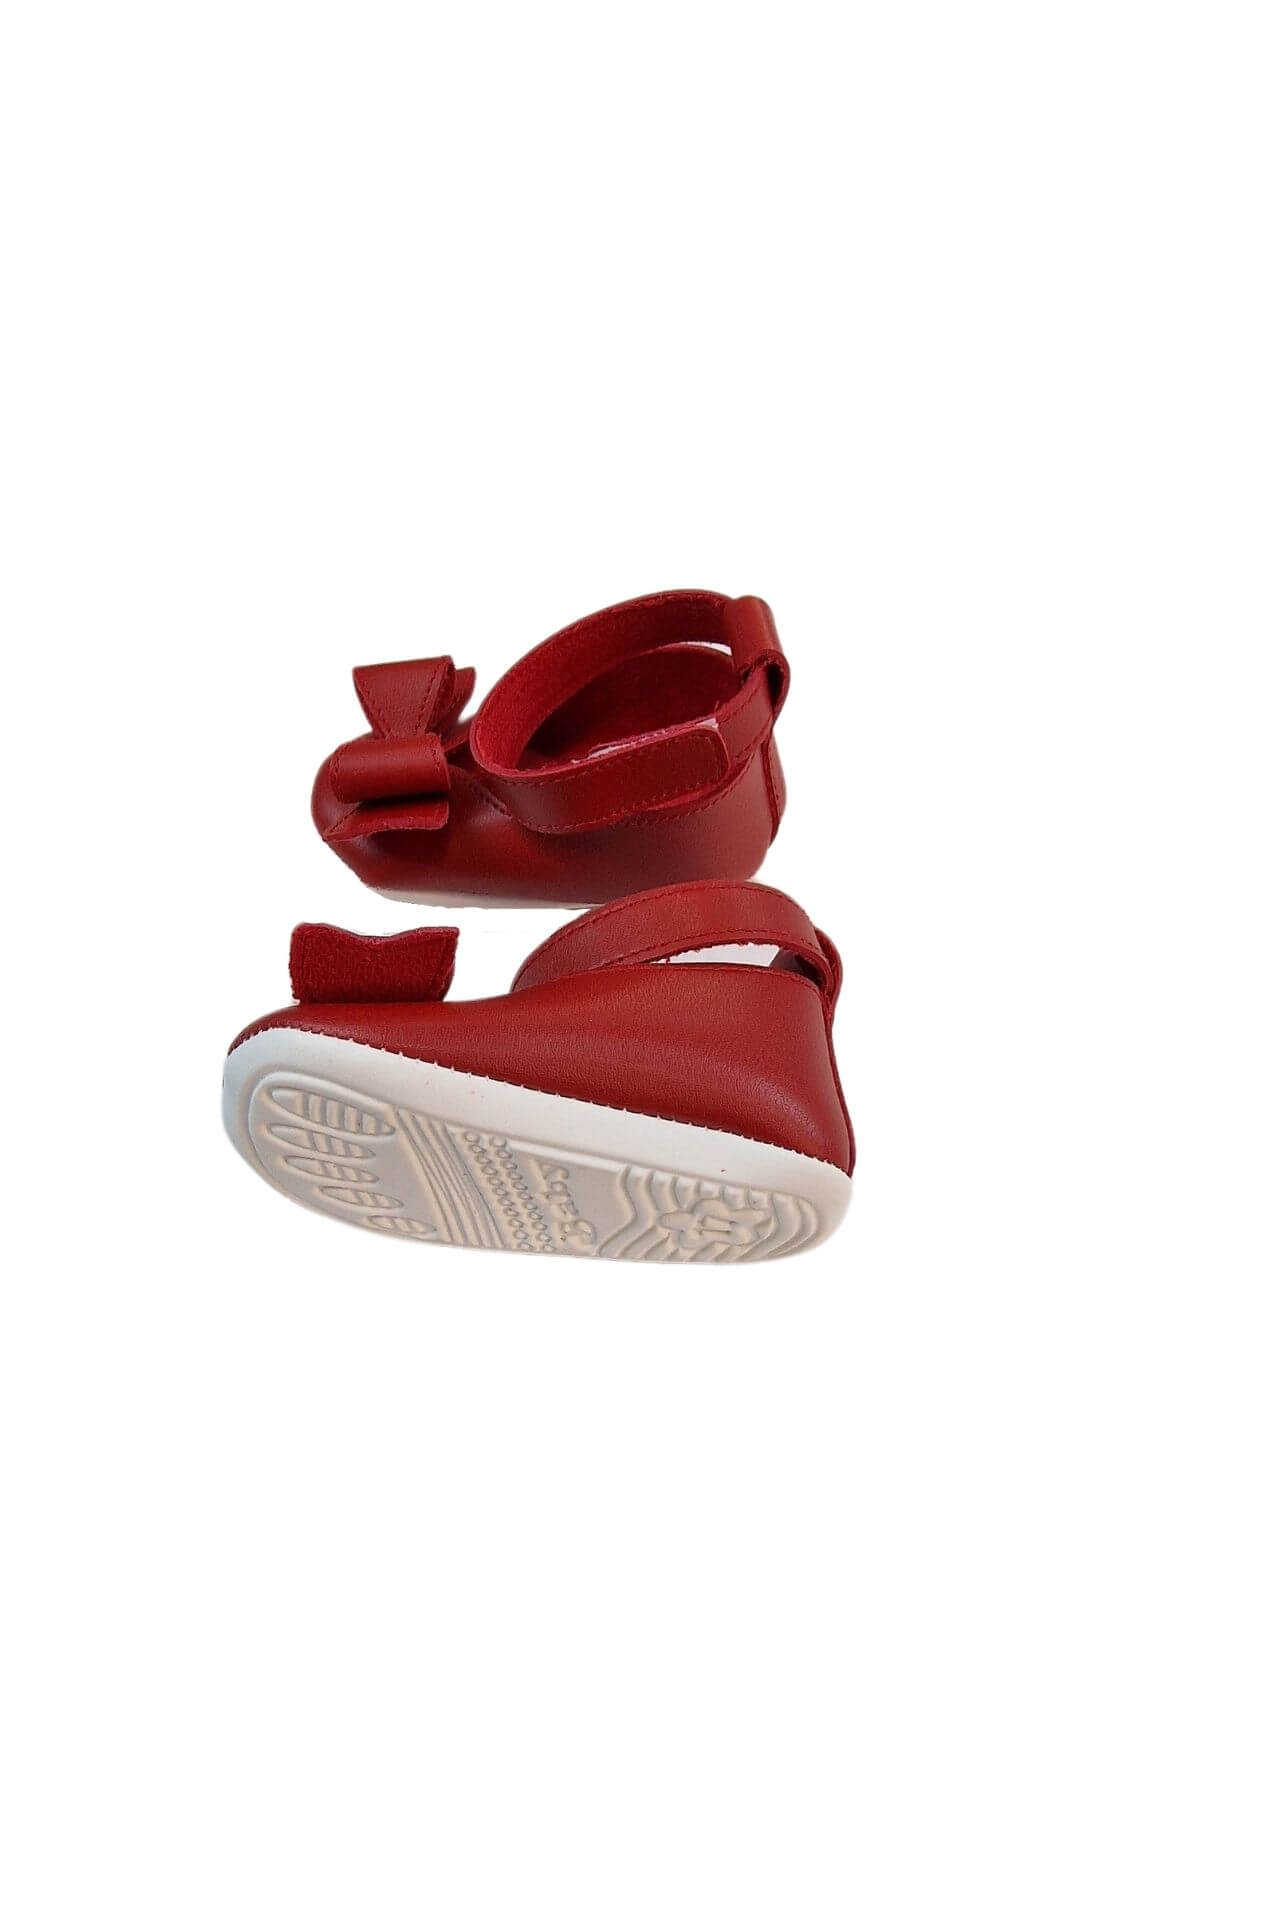 Παπούτσια Αγκαλιάς Δερματίνη Με Φιογκάκι W0338 (1)